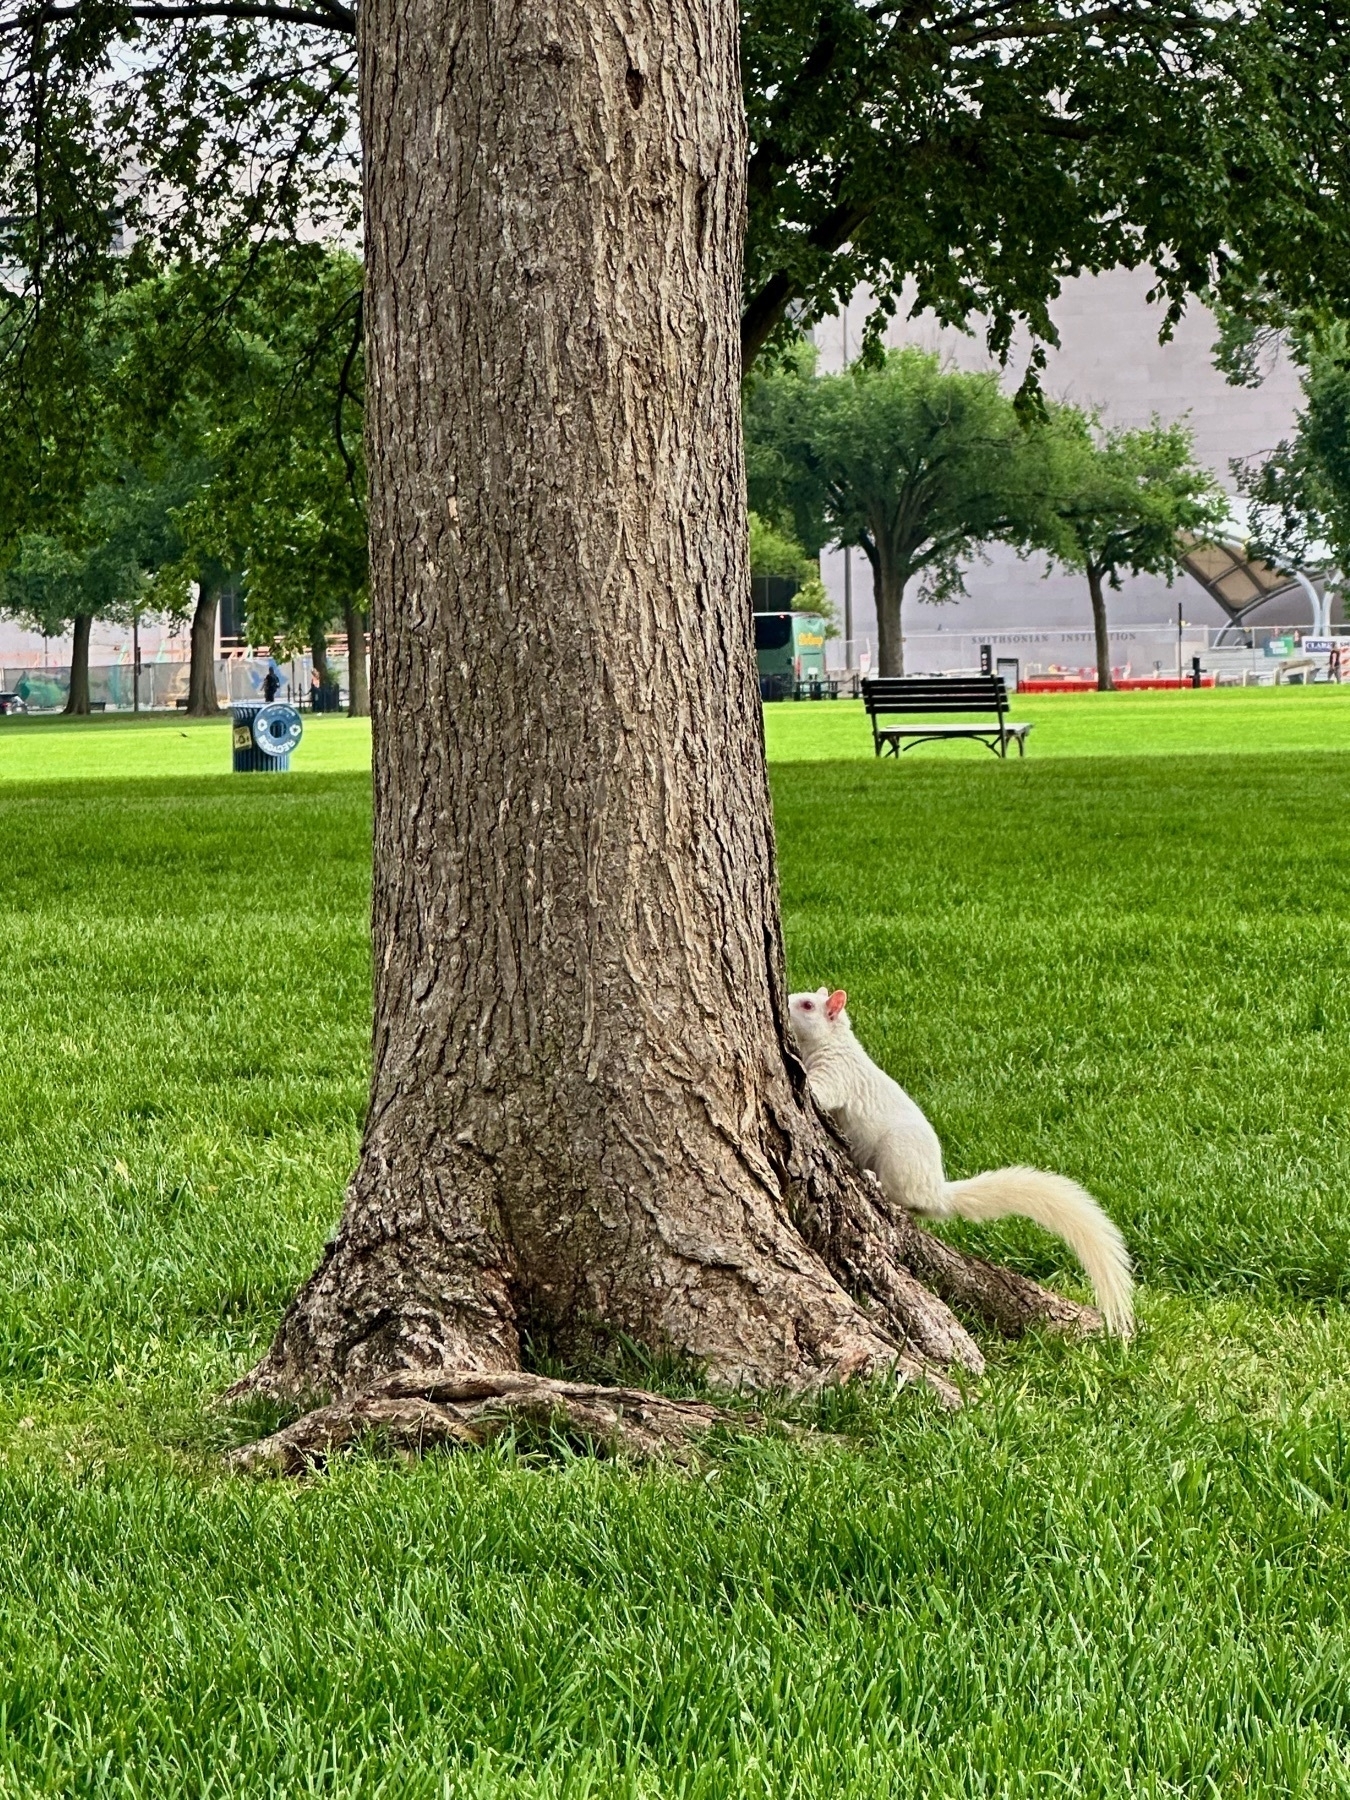 An albino squirrel climbing a tree.